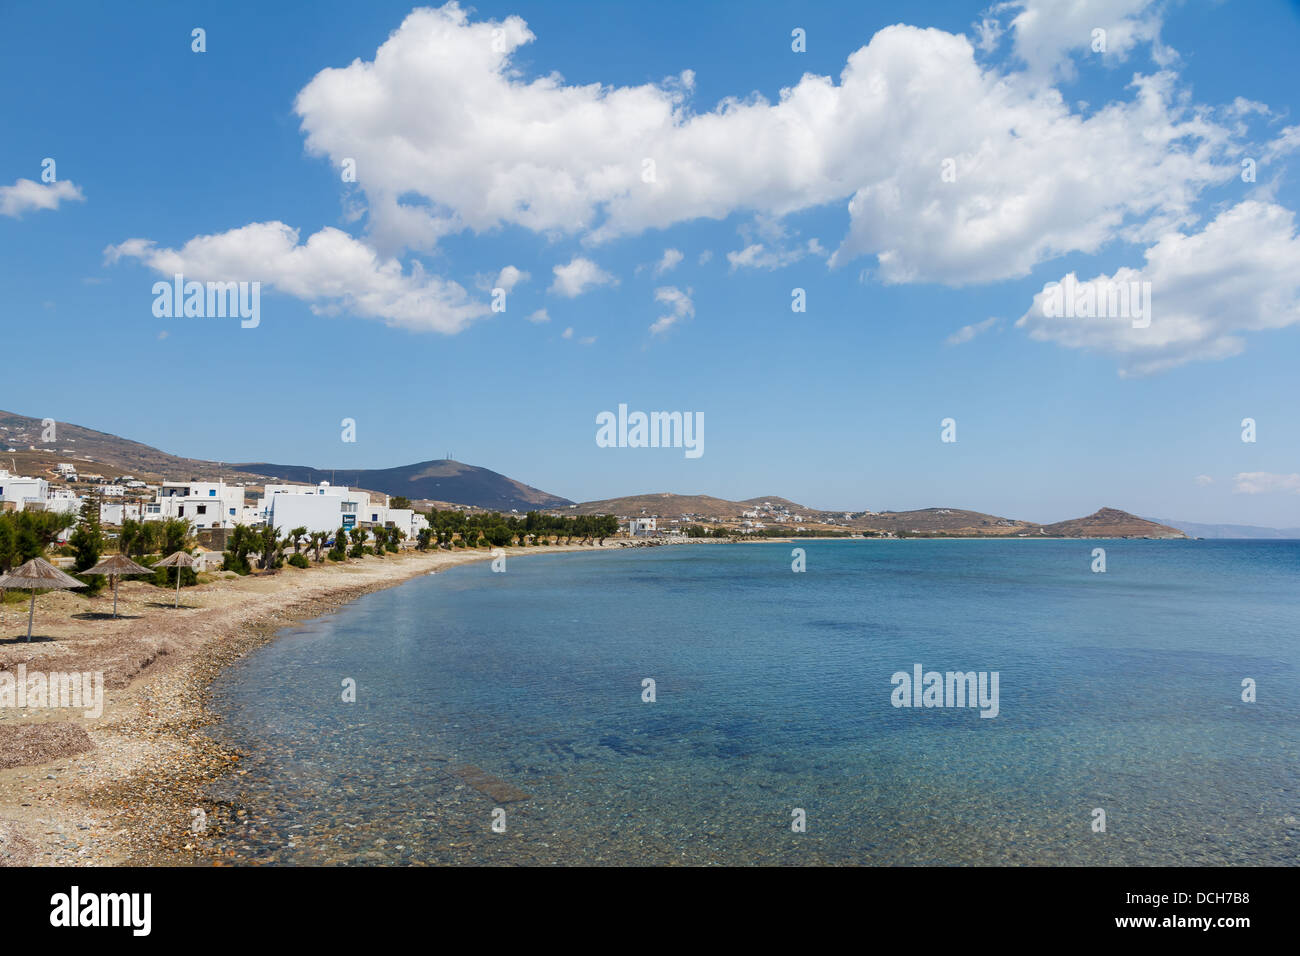 Plage vide contre un ciel nuageux, l'île de Tinos, Grèce Banque D'Images